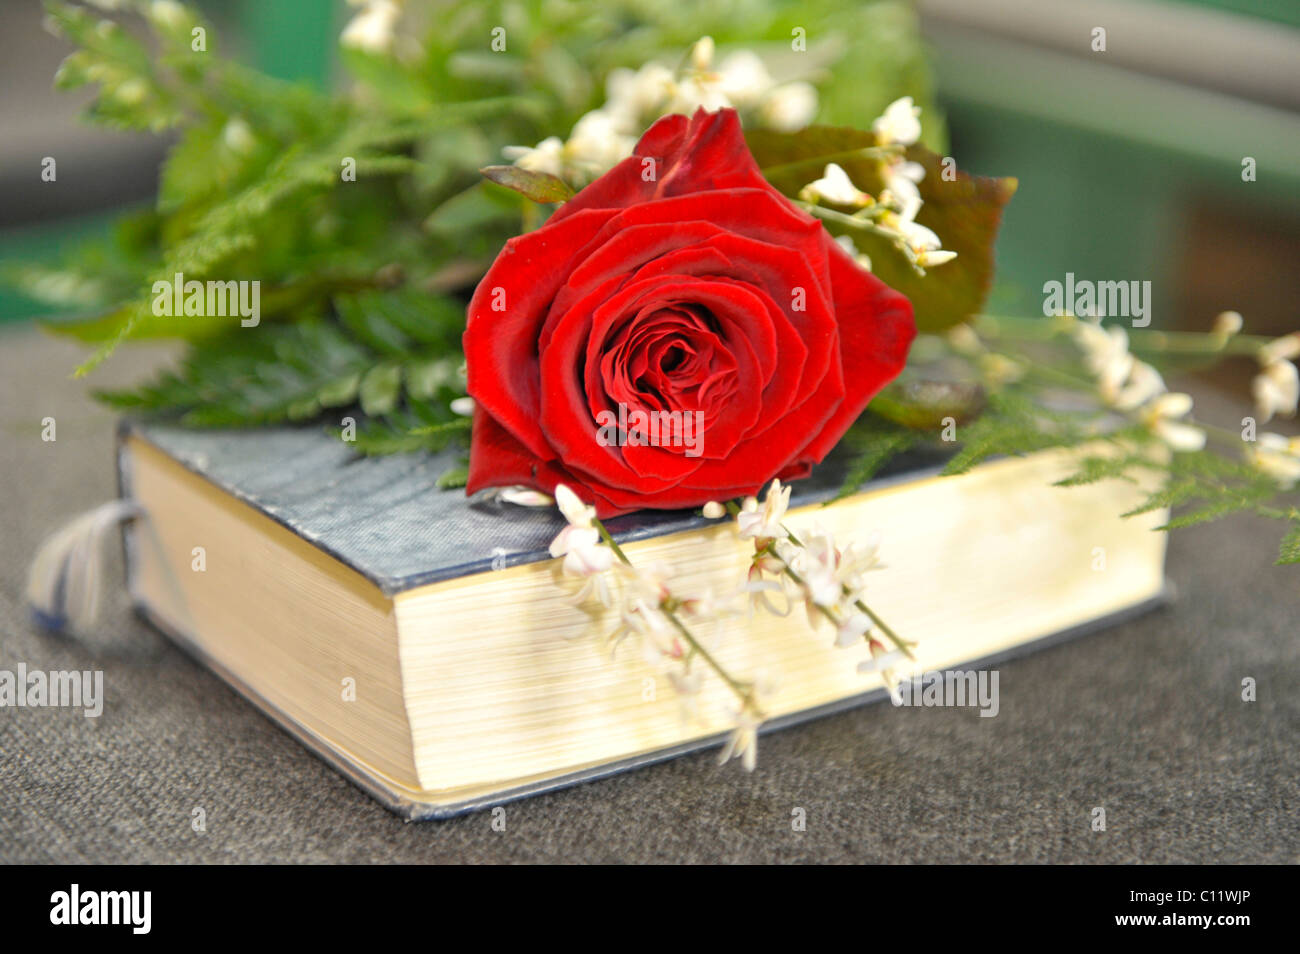 Rose auf einem Gesangbuch liegend Stockfotografie - Alamy